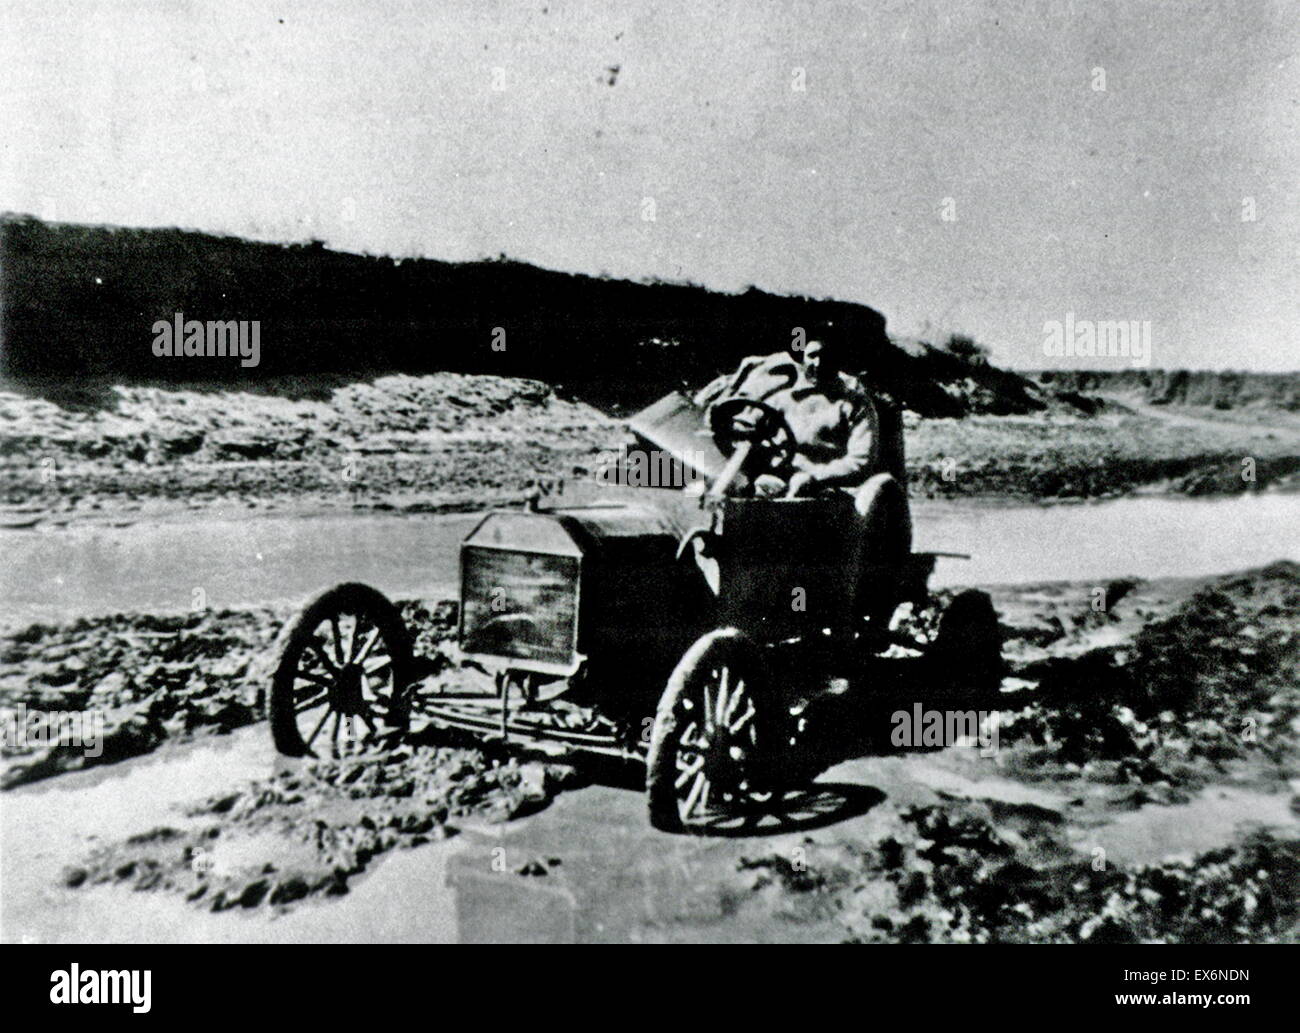 Public Health Service Arzt mit seinem Auto stecken im Schlamm, c. 1910-1920 Stockfoto